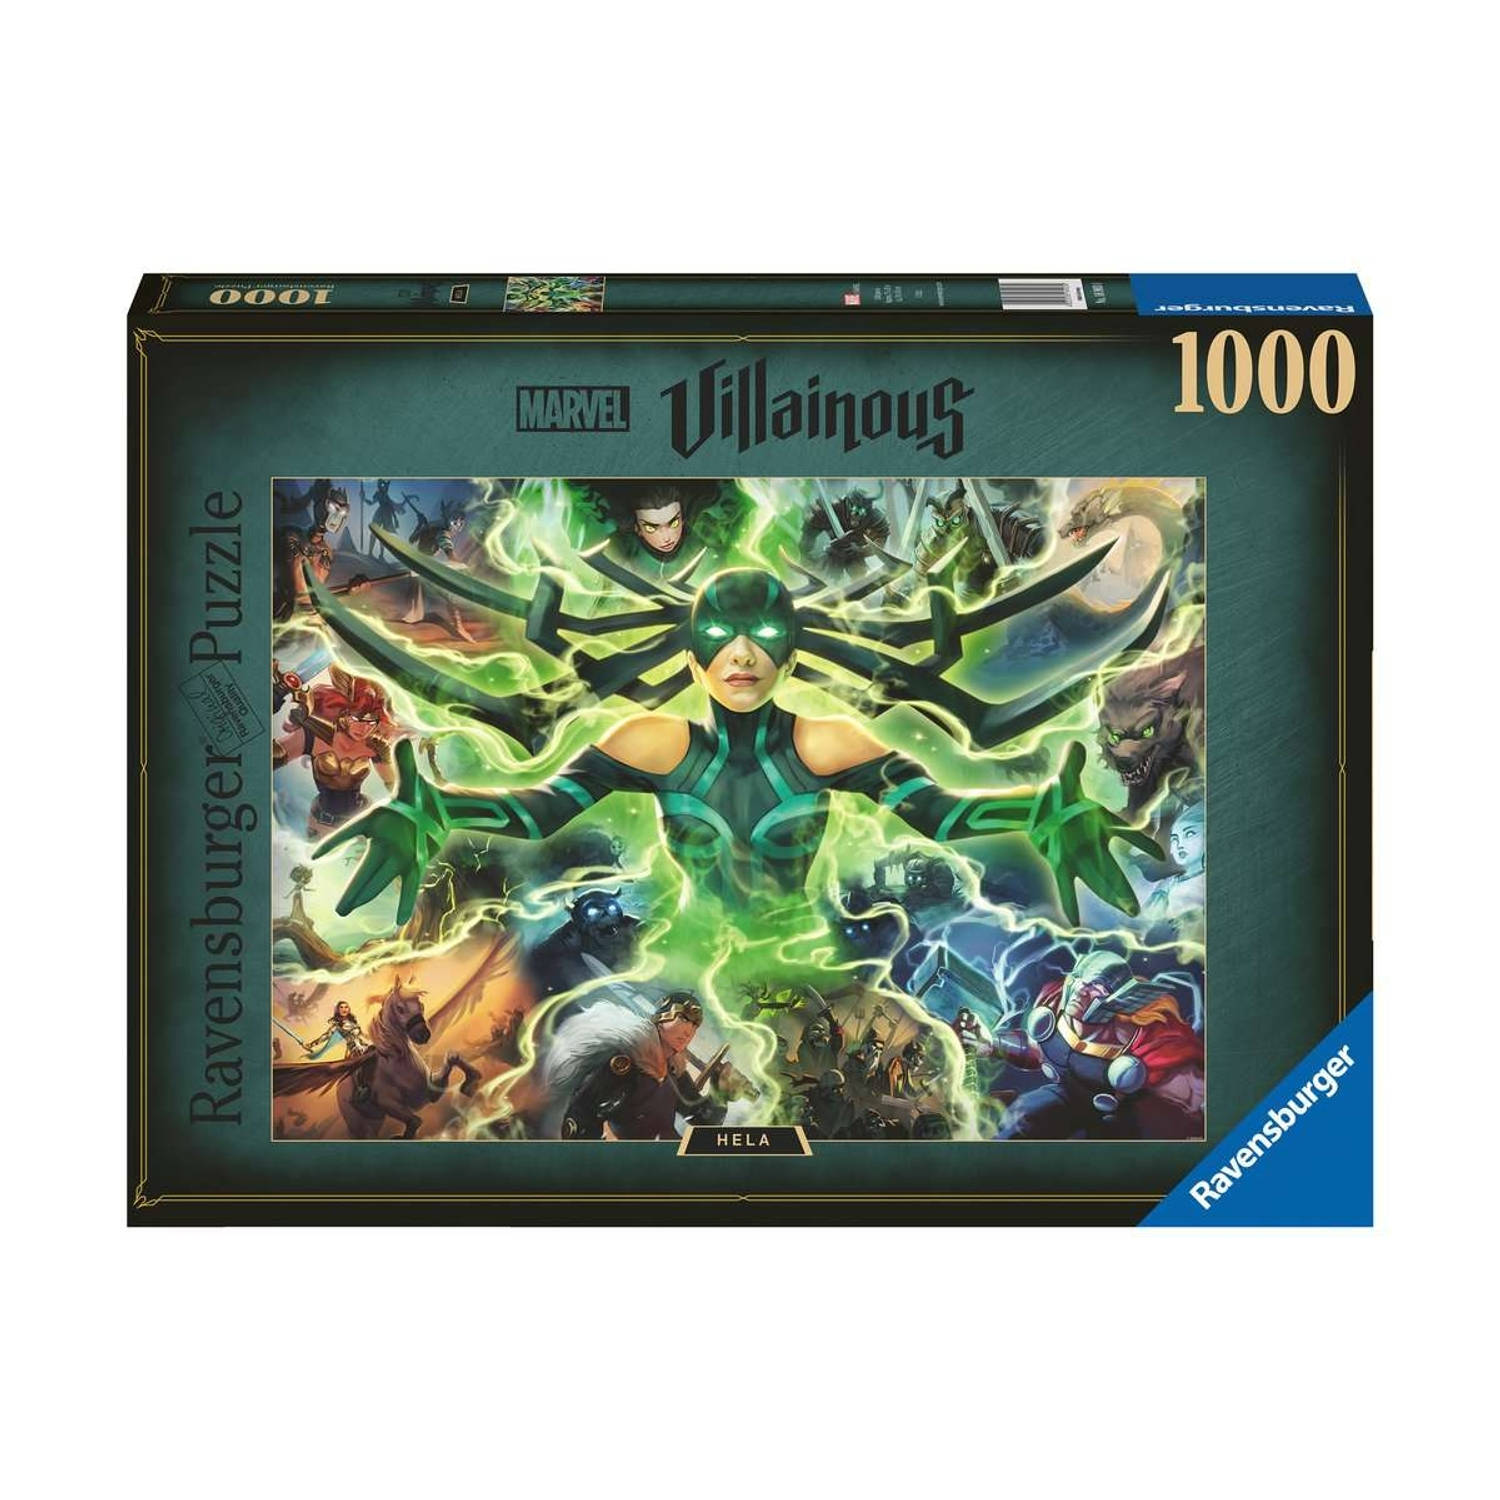 Marvel Villainous Jigsaw Puzzle Hela (1000 pieces)